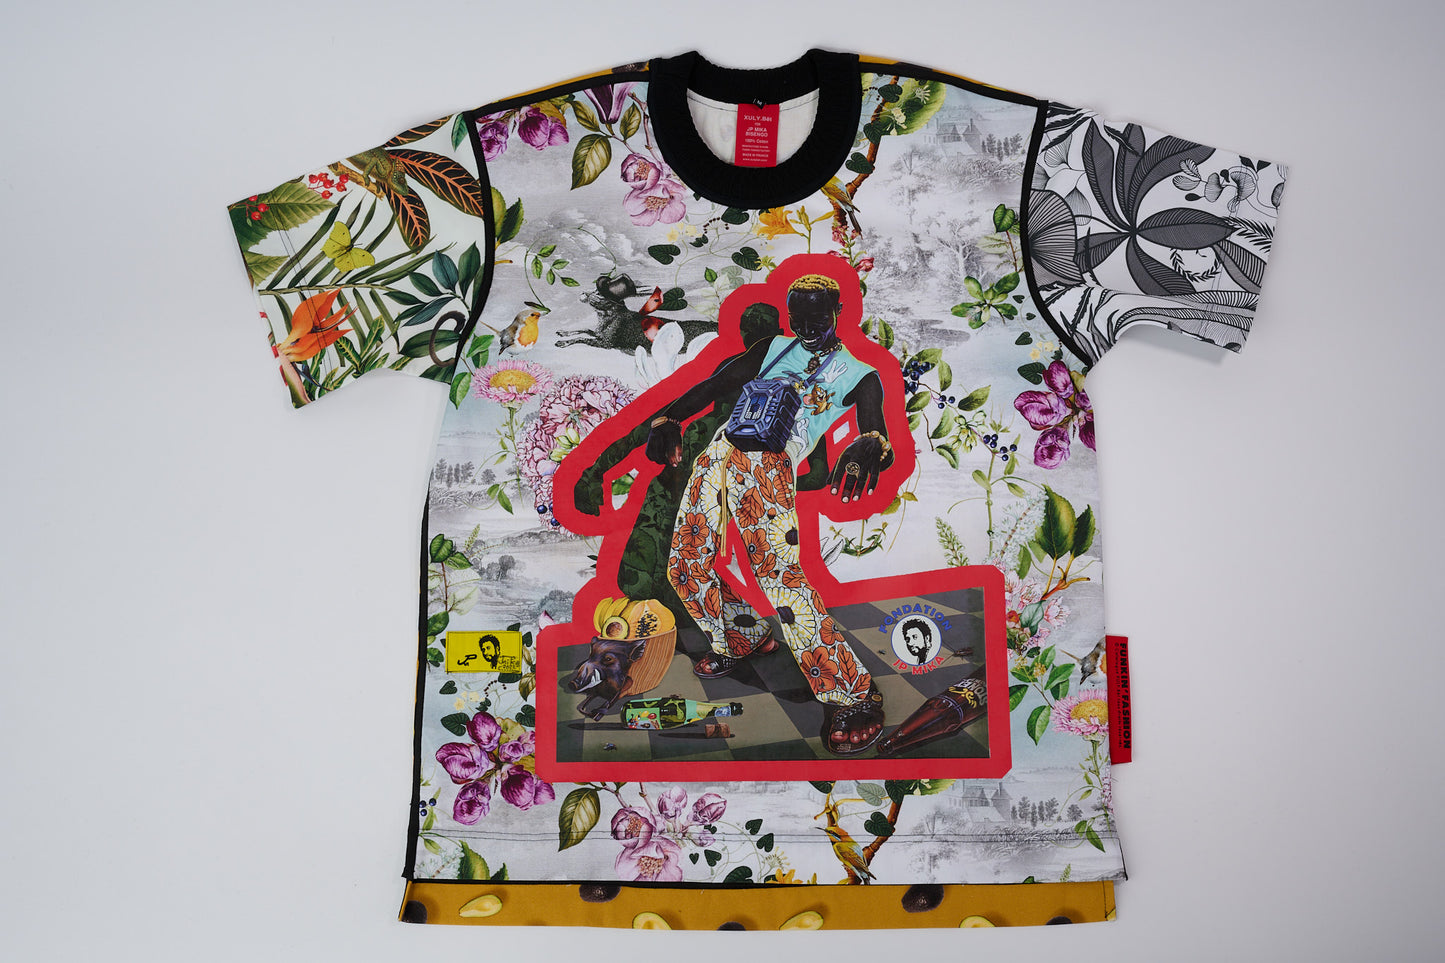 T-shirt BISENGO JP MIKA x XULY-BËT - Numéroté 9/65 - Taille M - Wearable-art inspiré du tableau "Feti n'a Feti" (C'est la fête) de la série de toiles BISENGO de JP MIKA.